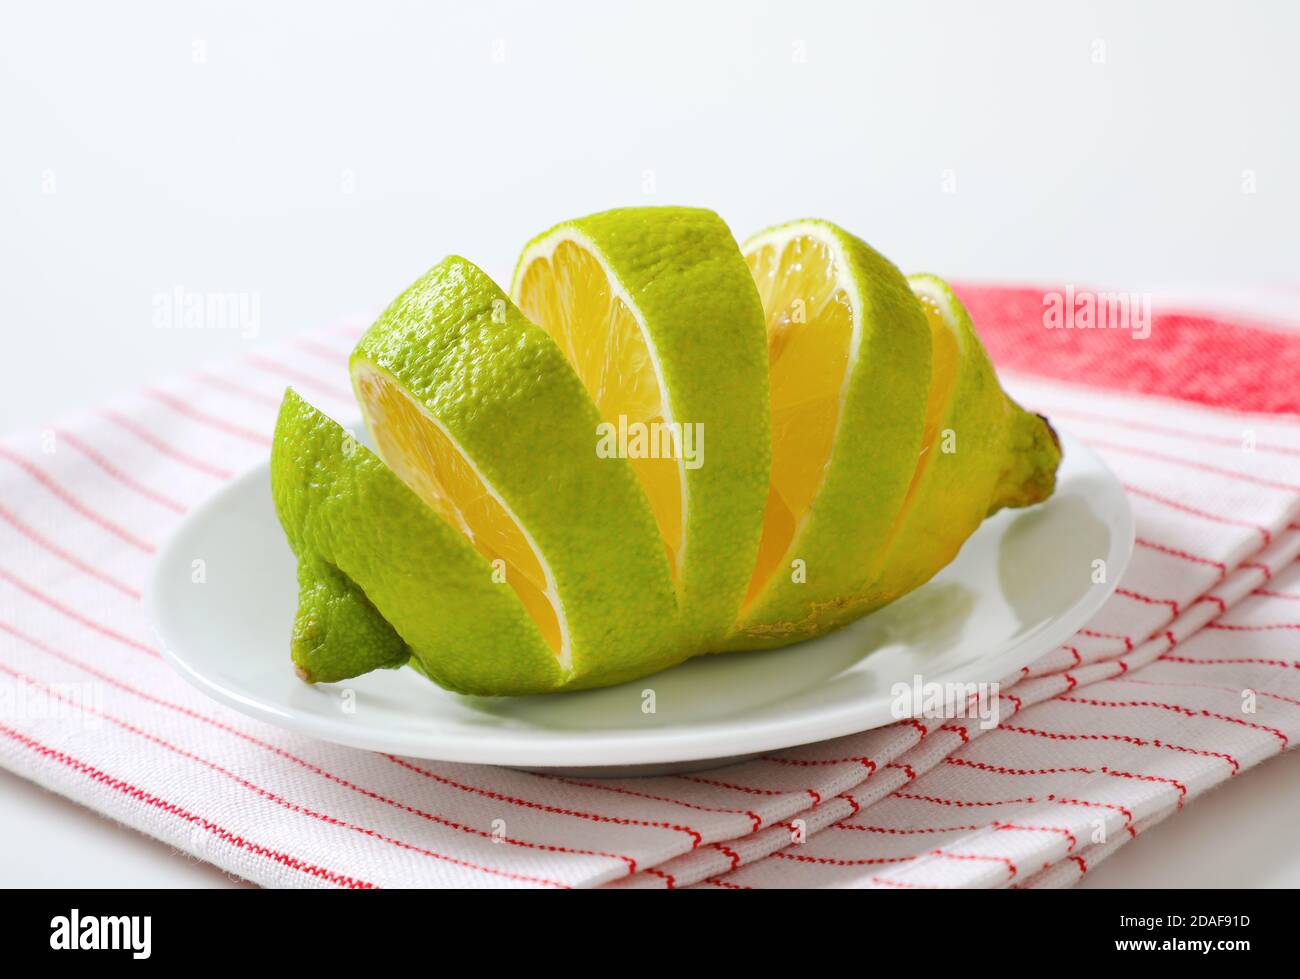 Limone con buccia verde e polpa gialla, affettato su piatto bianco Foto Stock